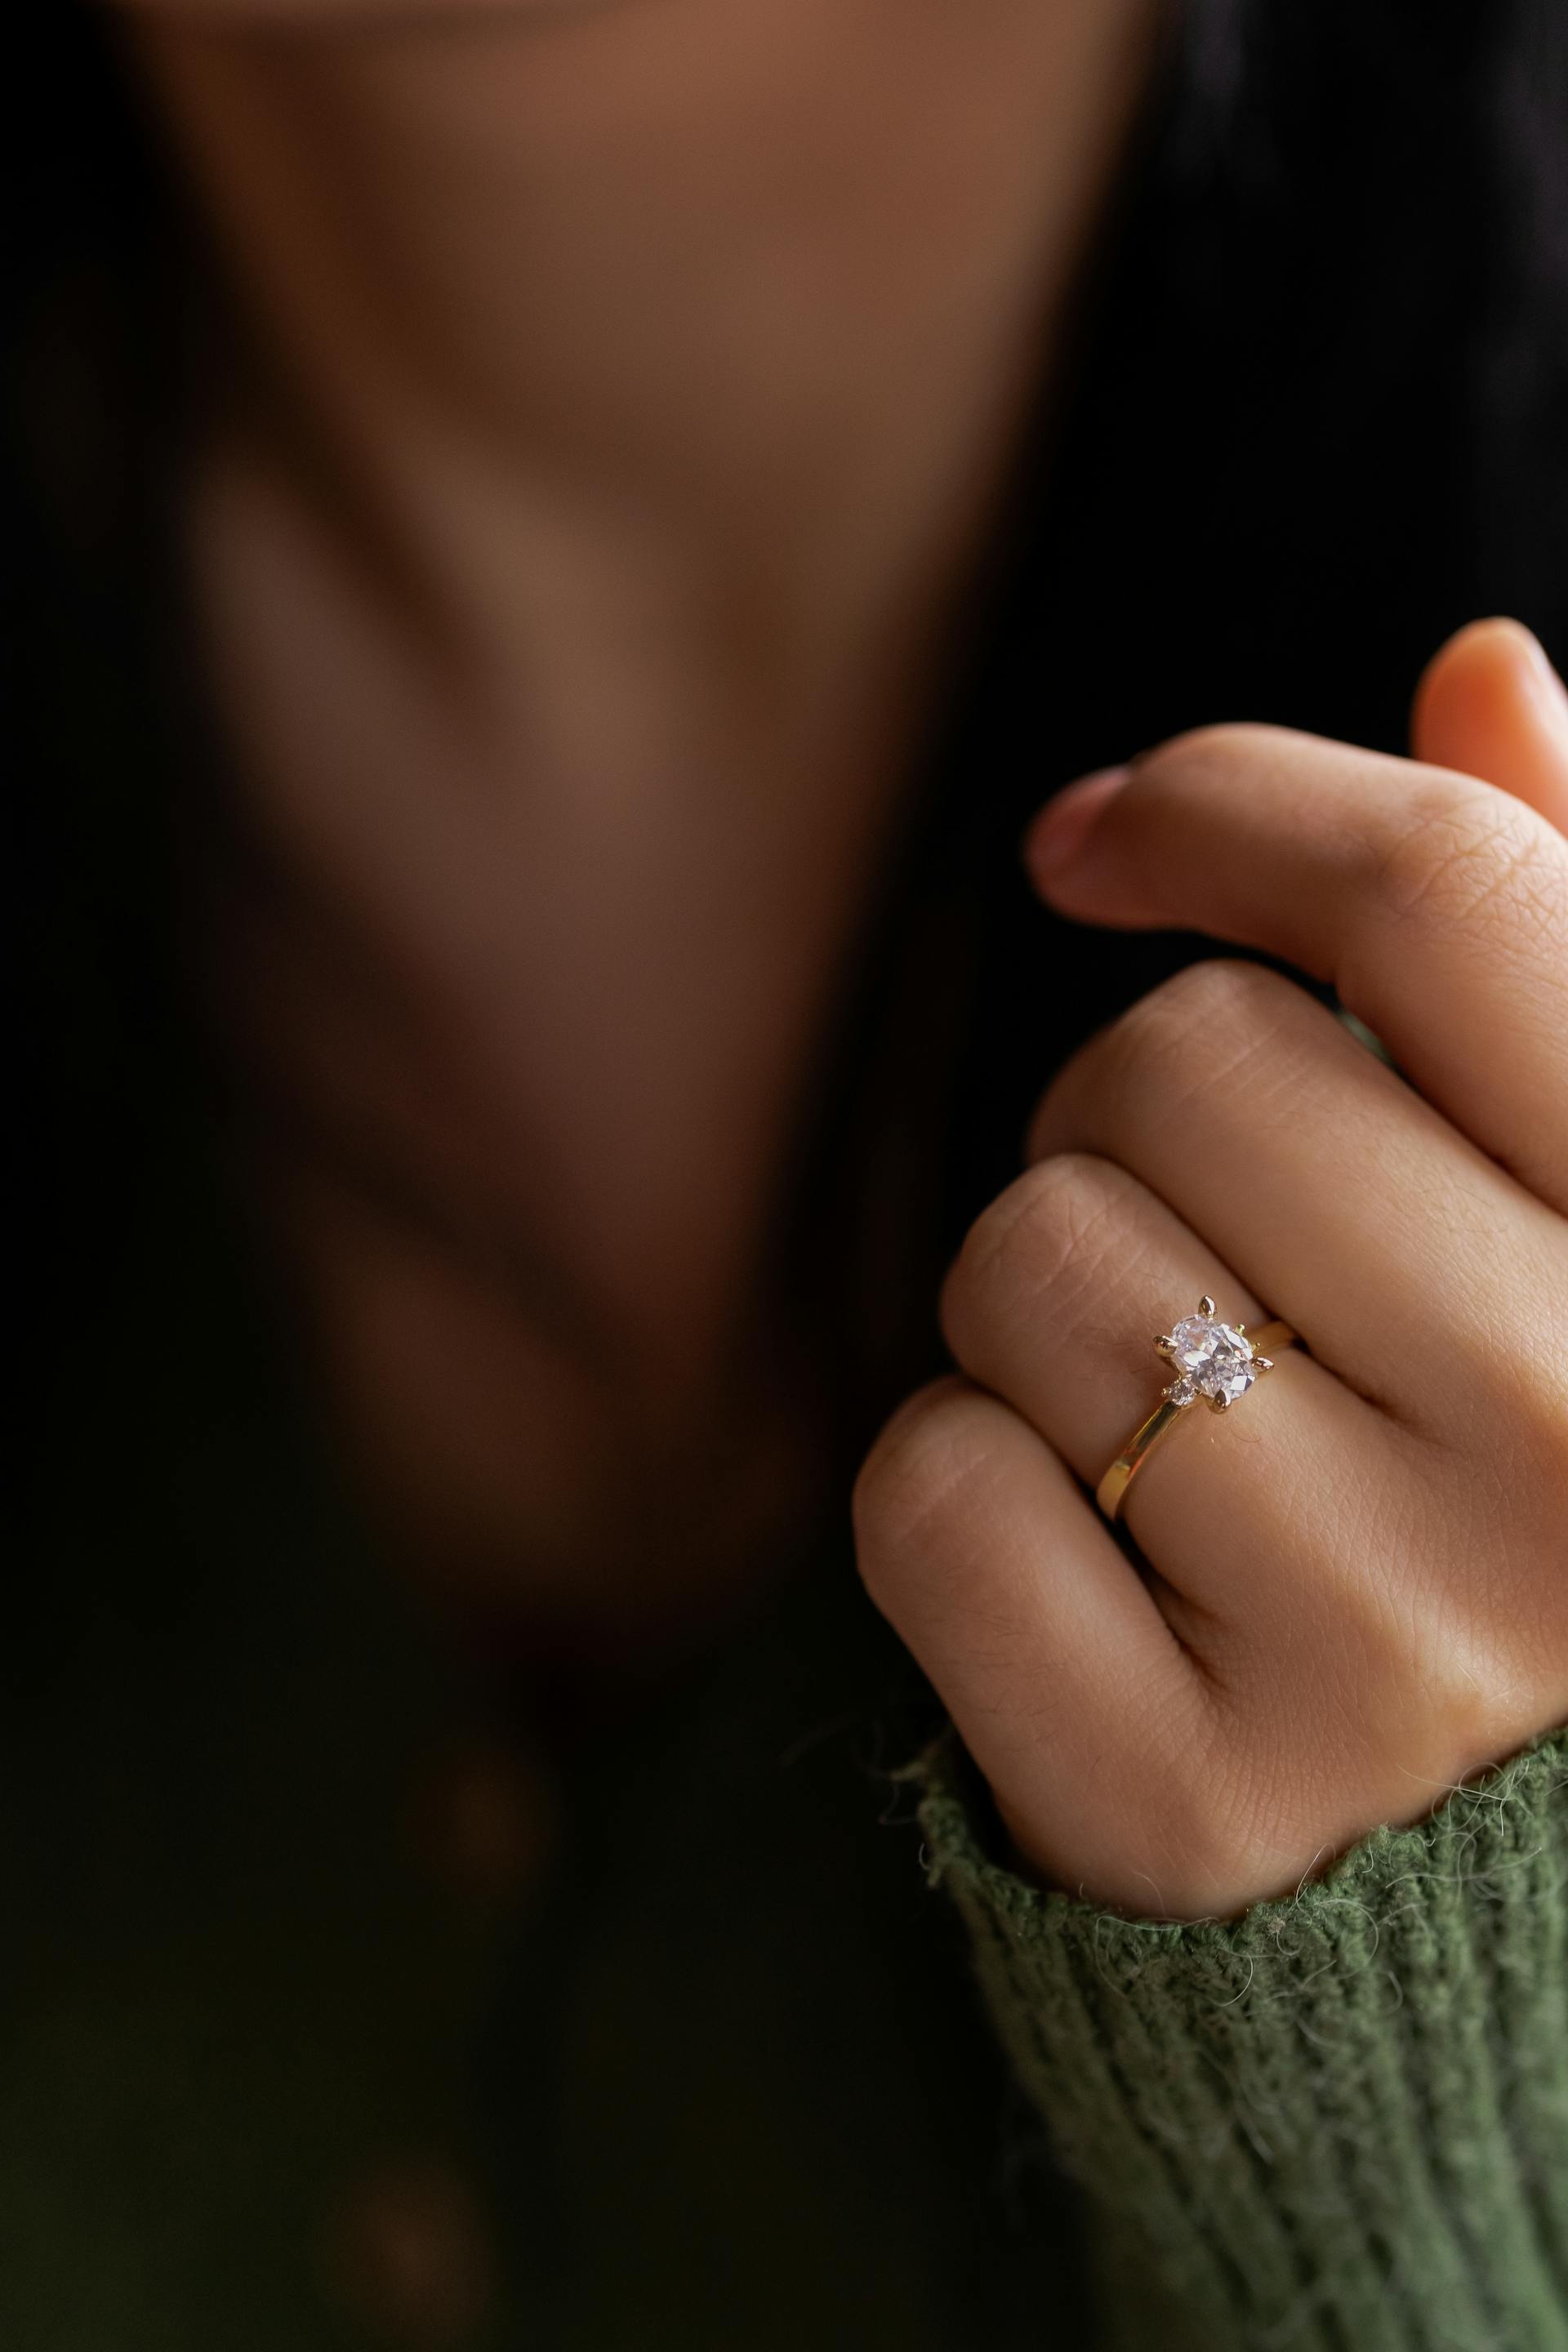 Bague de fiançailles sur la main d'une femme | Source : Pexels